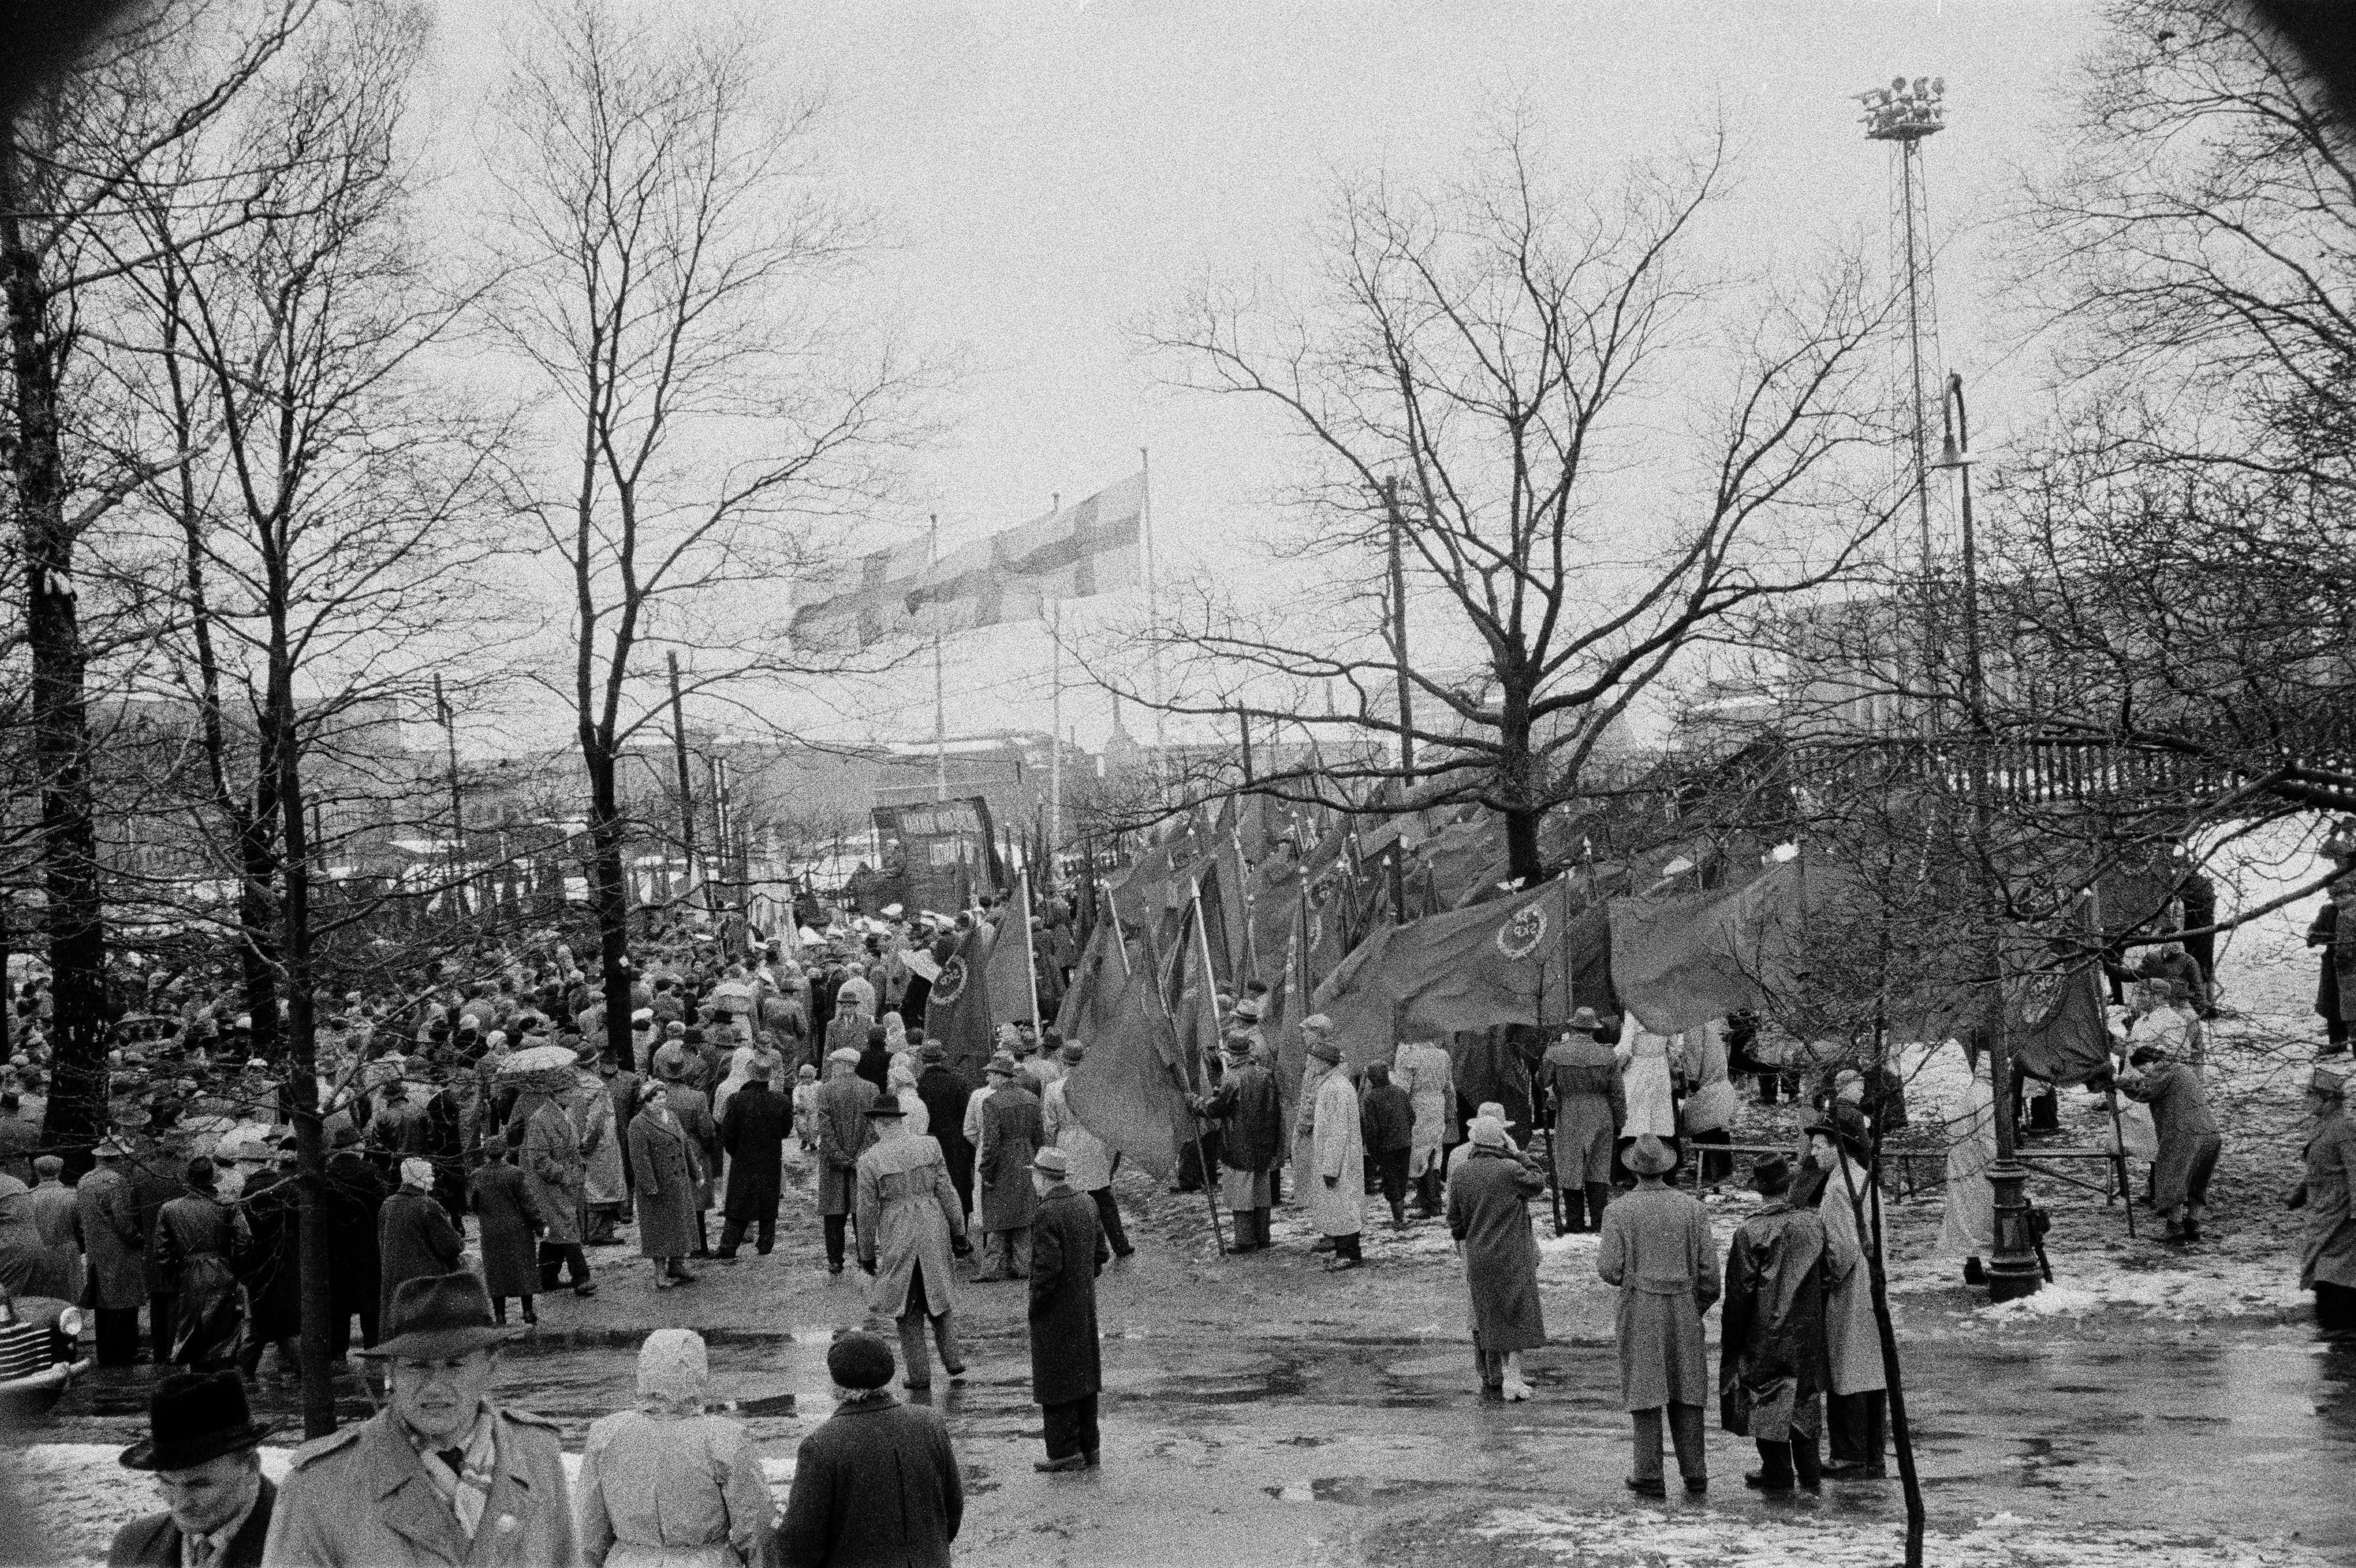 Työväen vappujuhla lumi- ja räntäsateessa Kaisaniemen kentällä 1957. Keskellä Suomen Kommunistisen Puolueen (SKP) lippujen kantajia.